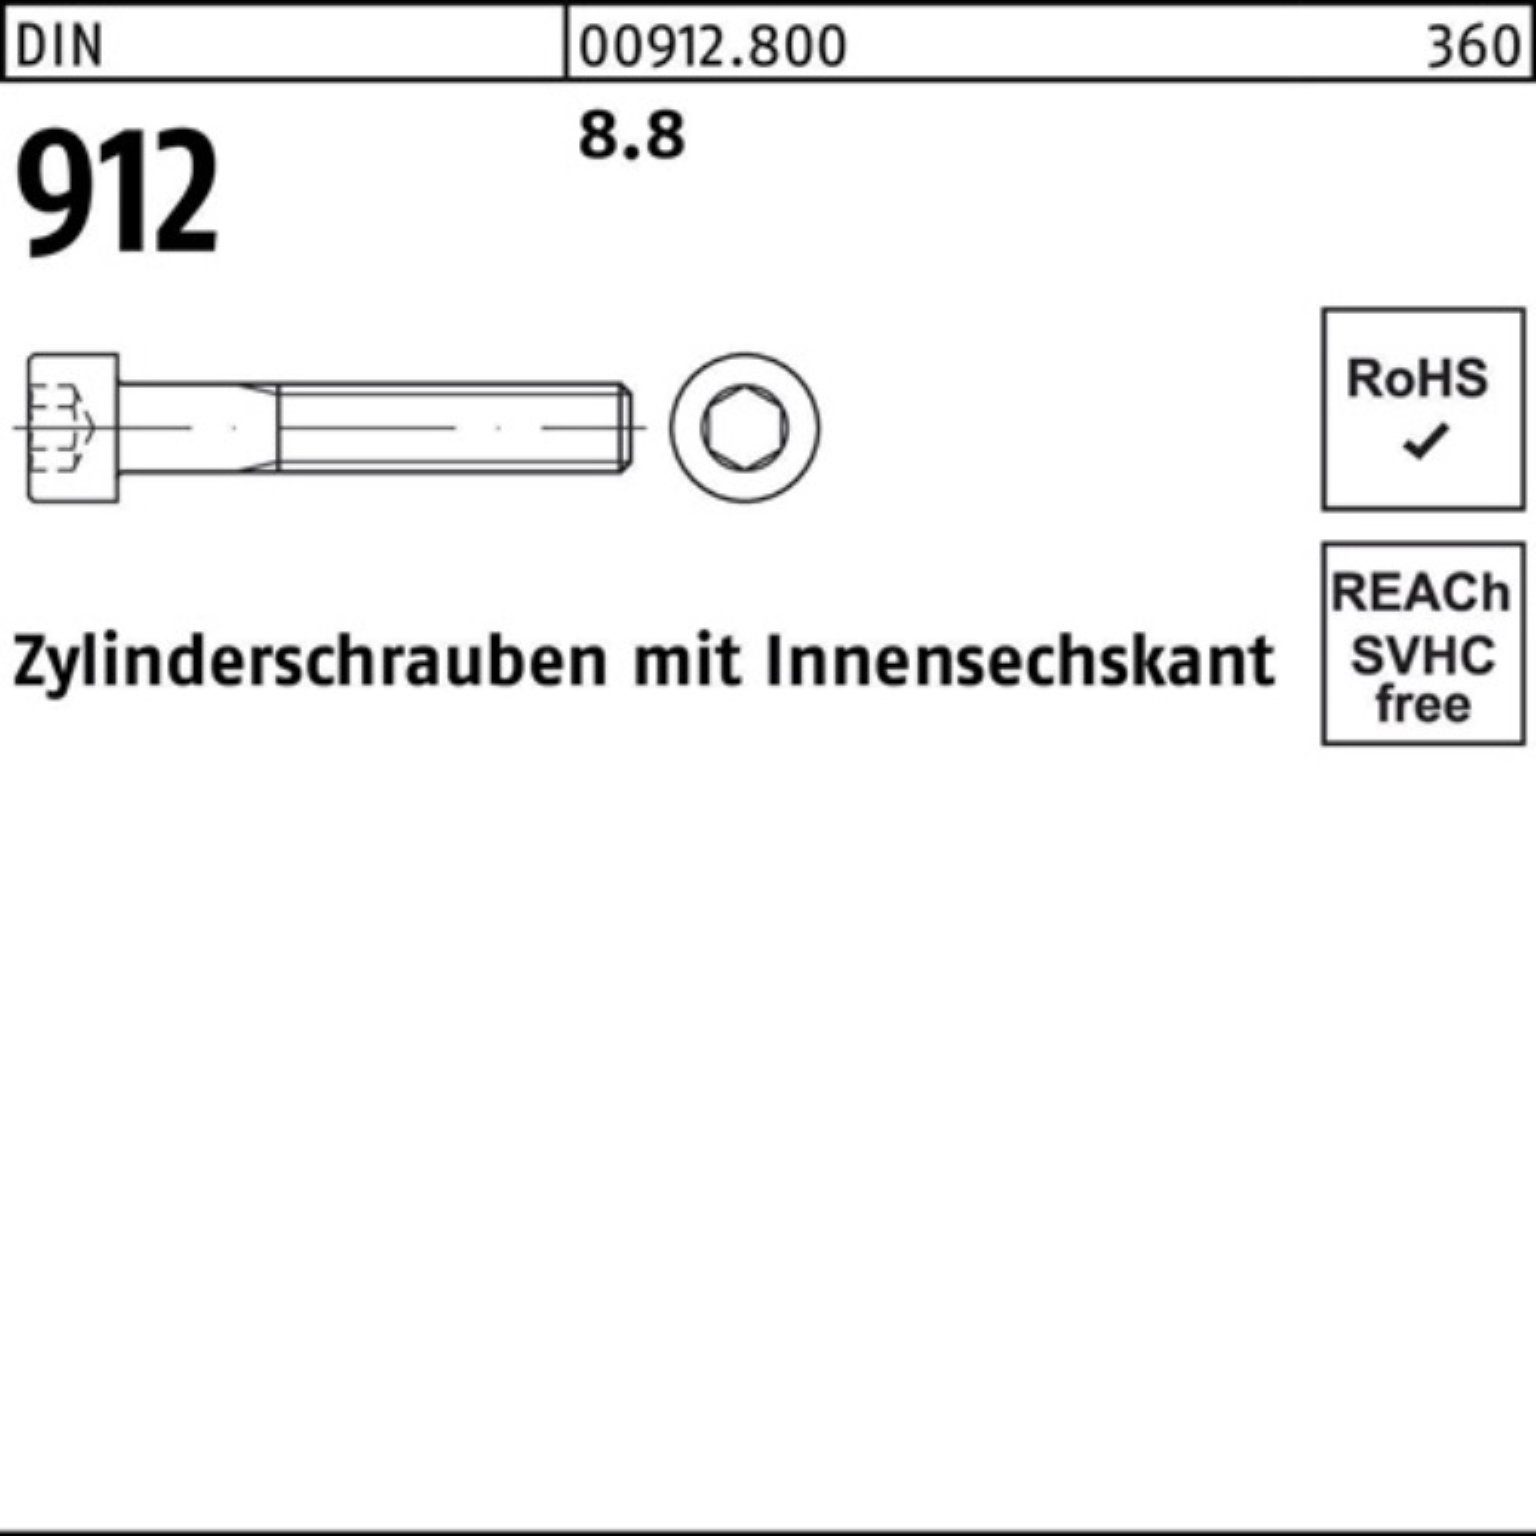 Zylinderschraube 912 1 M24x Innen-6kt Zylinderschraube Reyher Stück 240 DIN Pack DI 100er 8.8